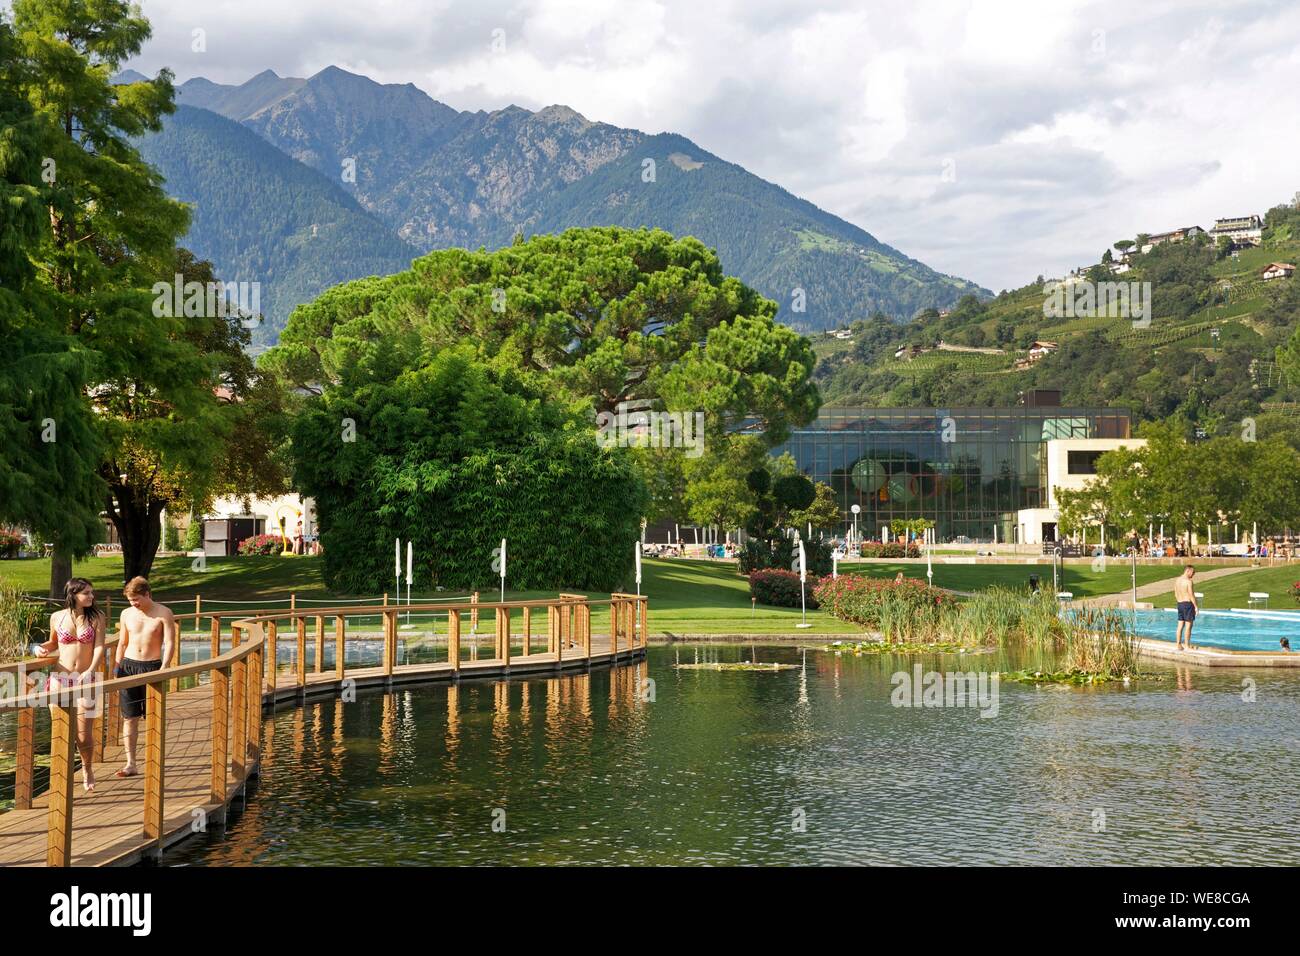 Italien, Autonome Provinz Bozen, Meran, im freien Wasser lebende Bereiche und Park sported Begriffe von Meran mit Bergen für die Landschaft Stockfoto